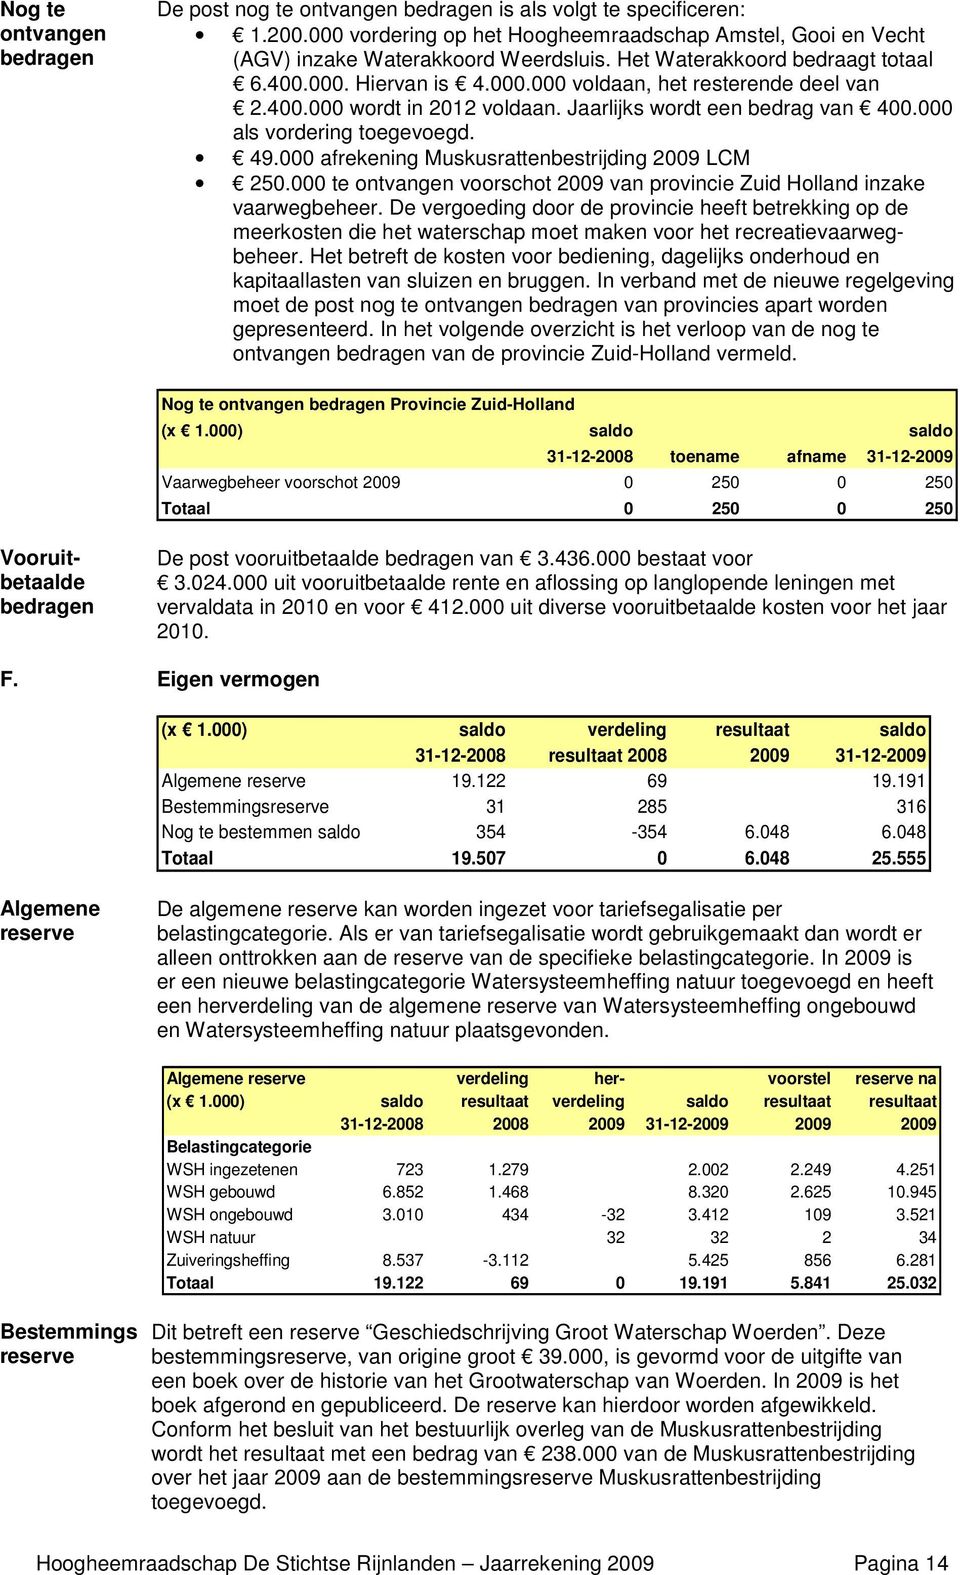 000 afrekening Muskusrattenbestrijding 2009 LCM 250.000 te ontvangen voorschot 2009 van provincie Zuid Holland inzake vaarwegbeheer.